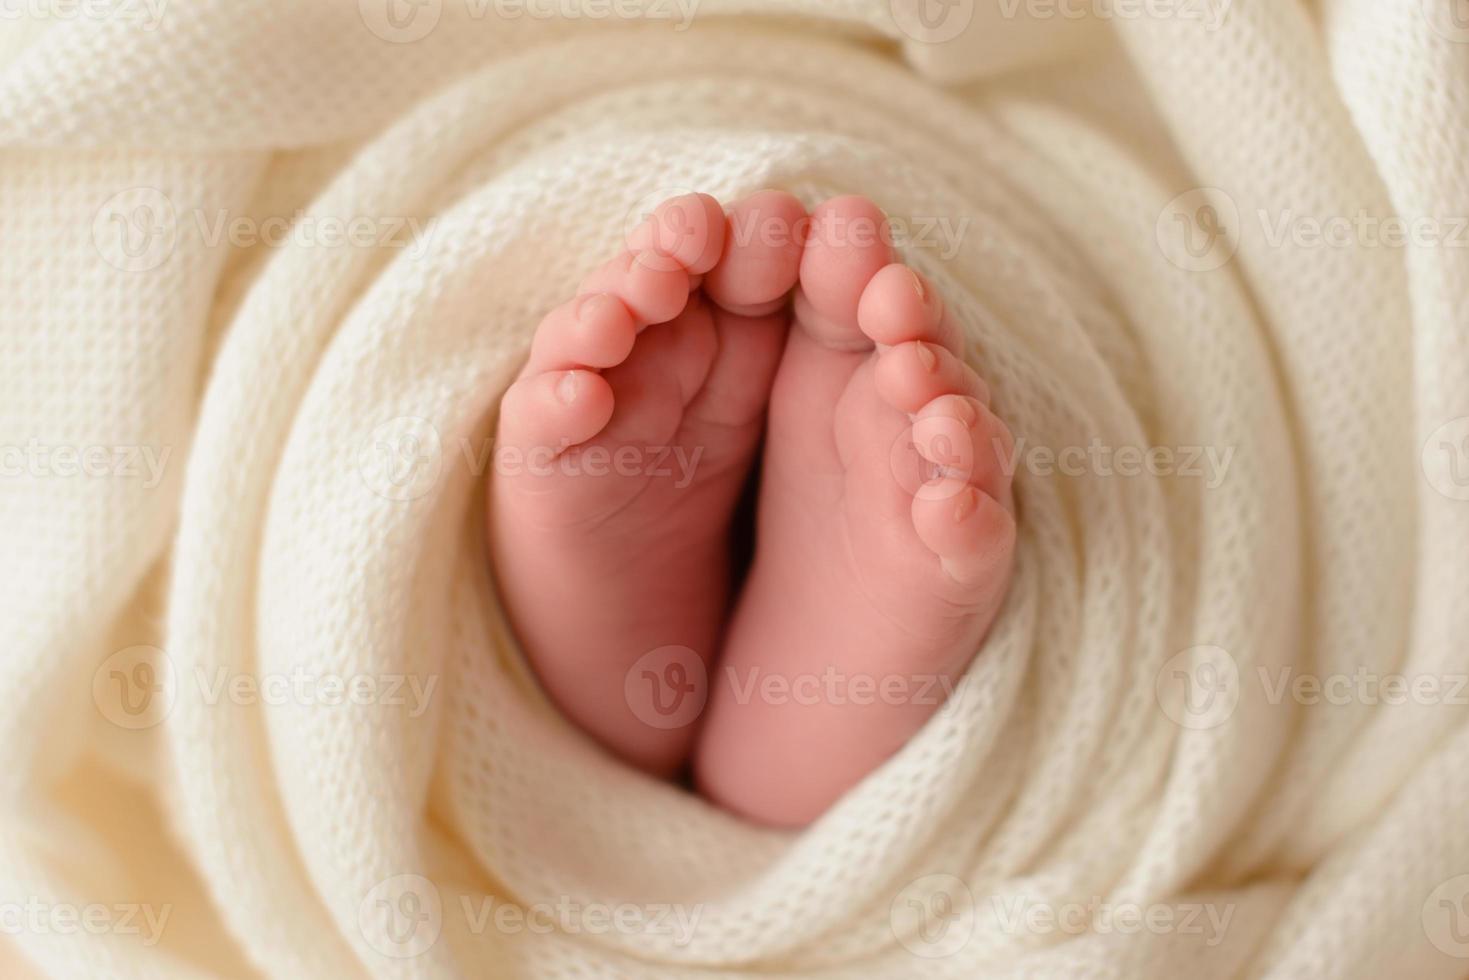 pequenas belas pernas de um bebê recém-nascido nos primeiros dias de vida foto